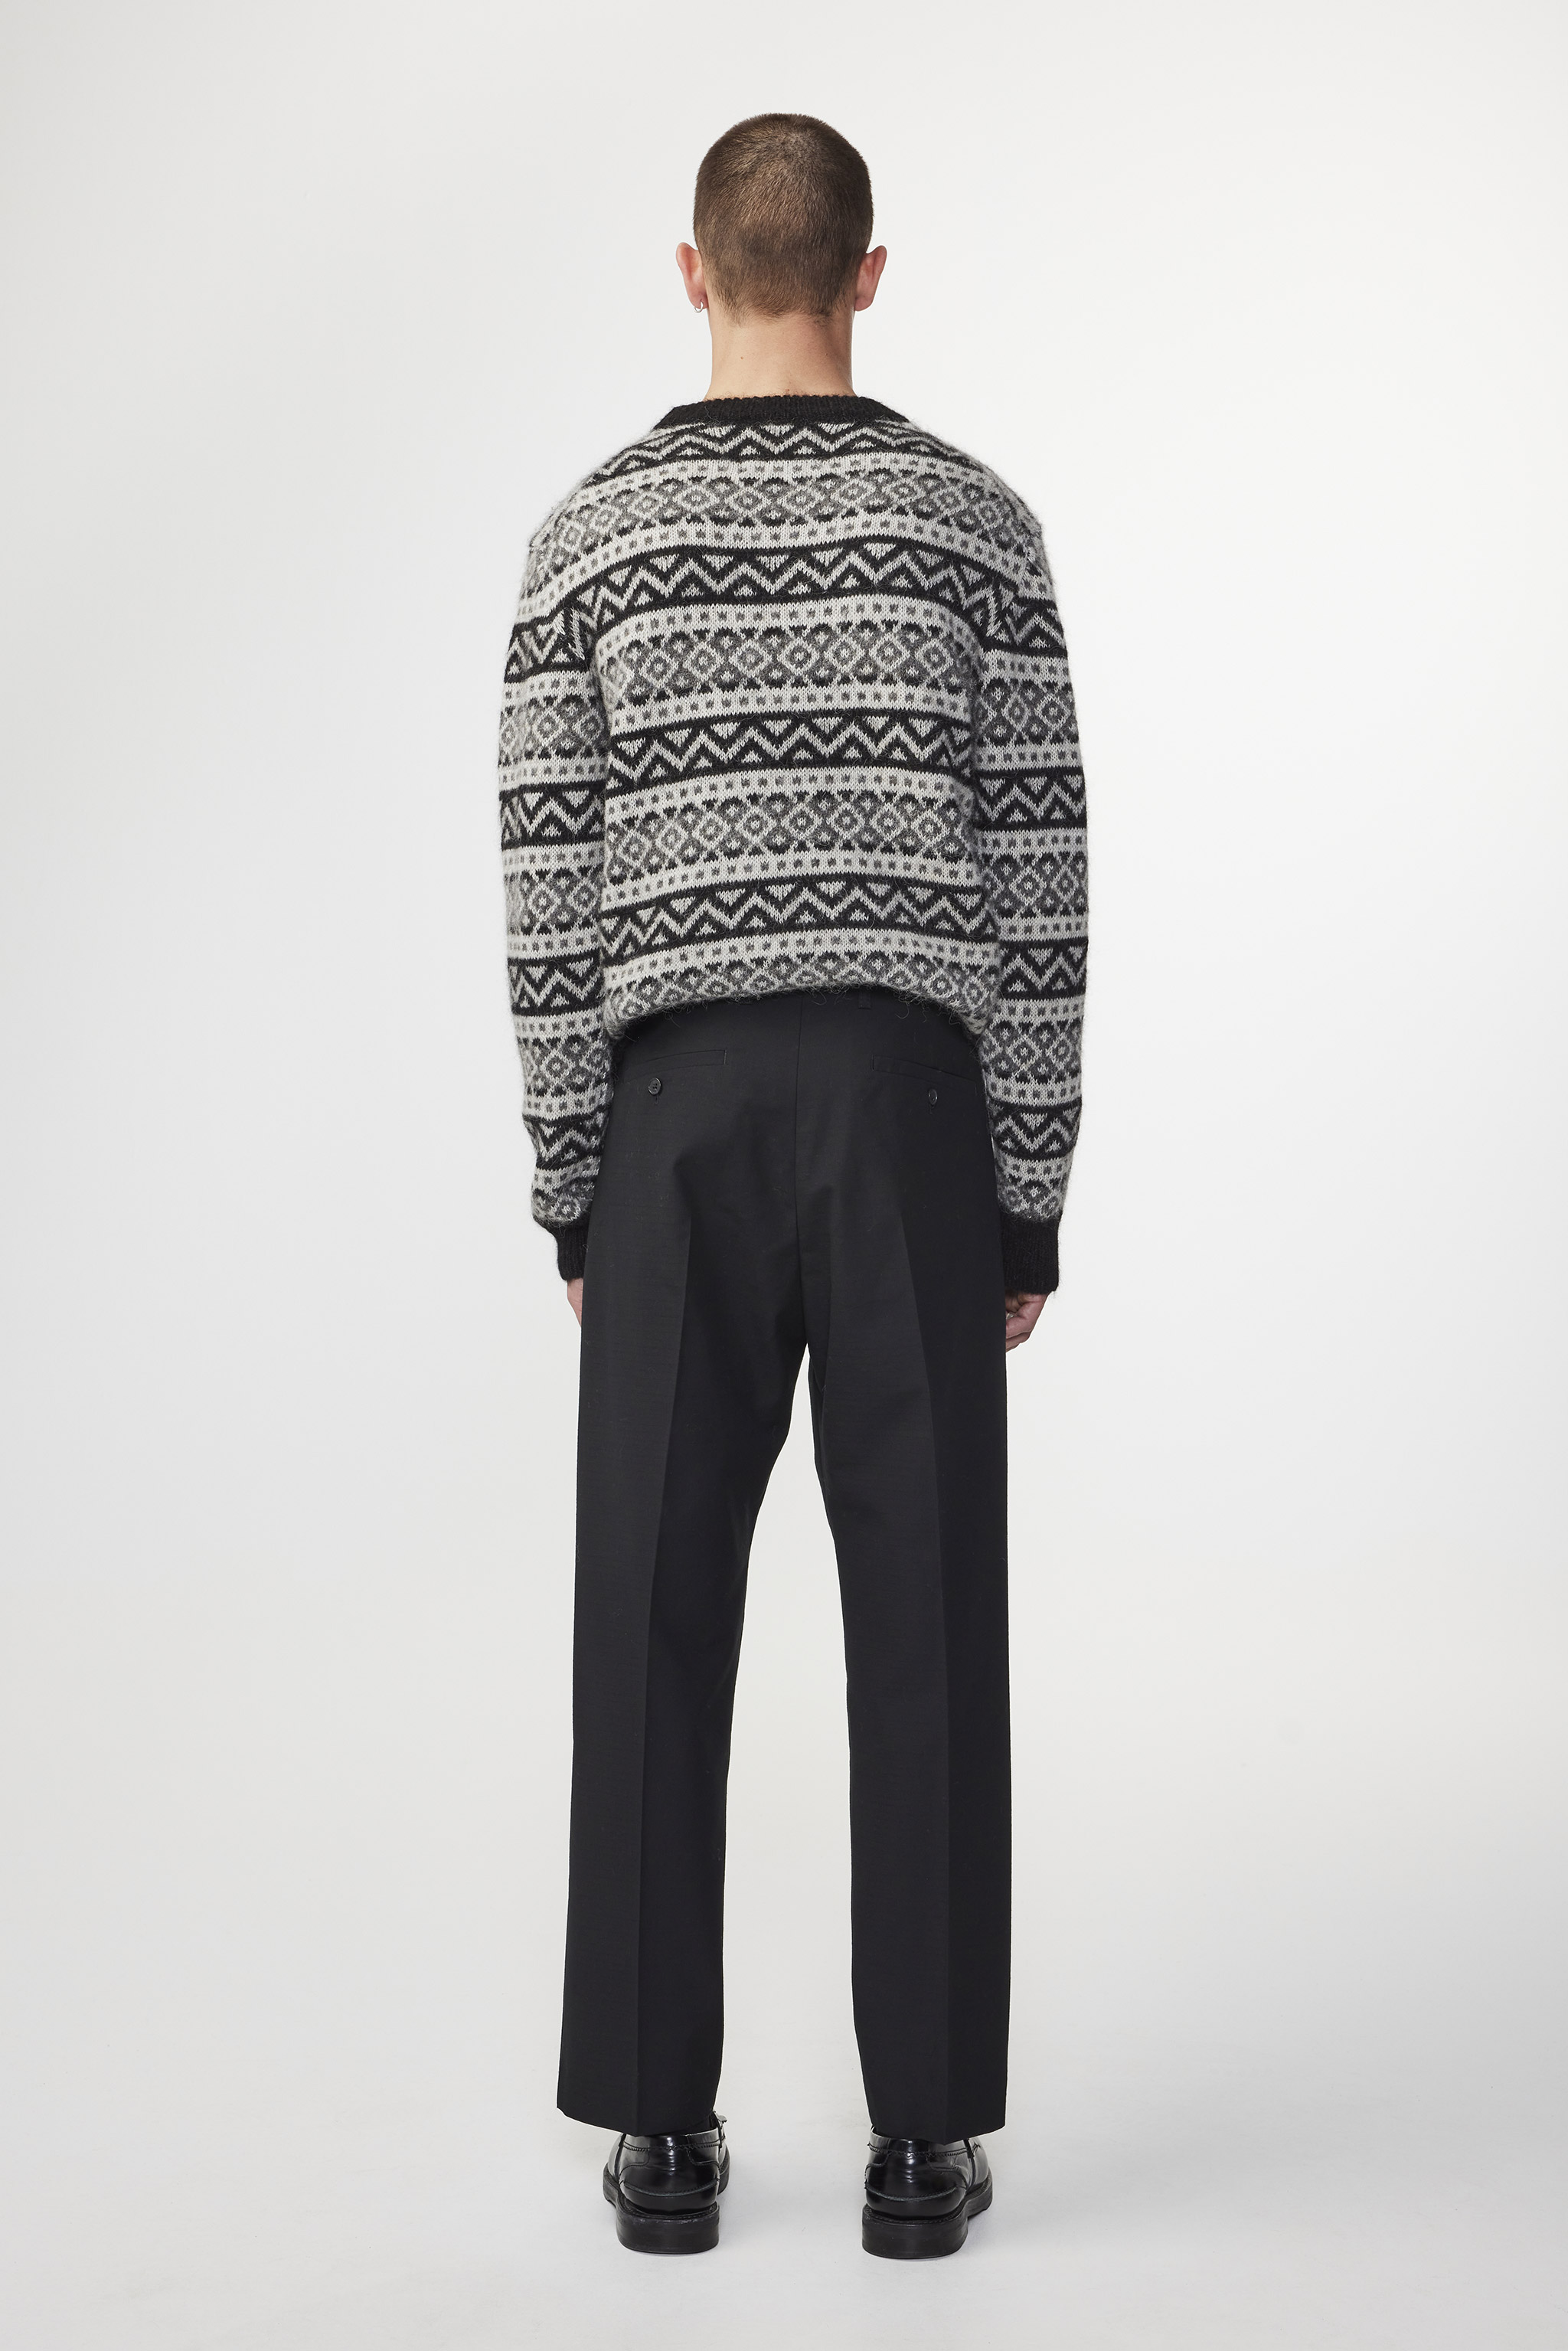 Louis Carlo Men's Fleece Sweatshirt, Lightweight, Zip Front